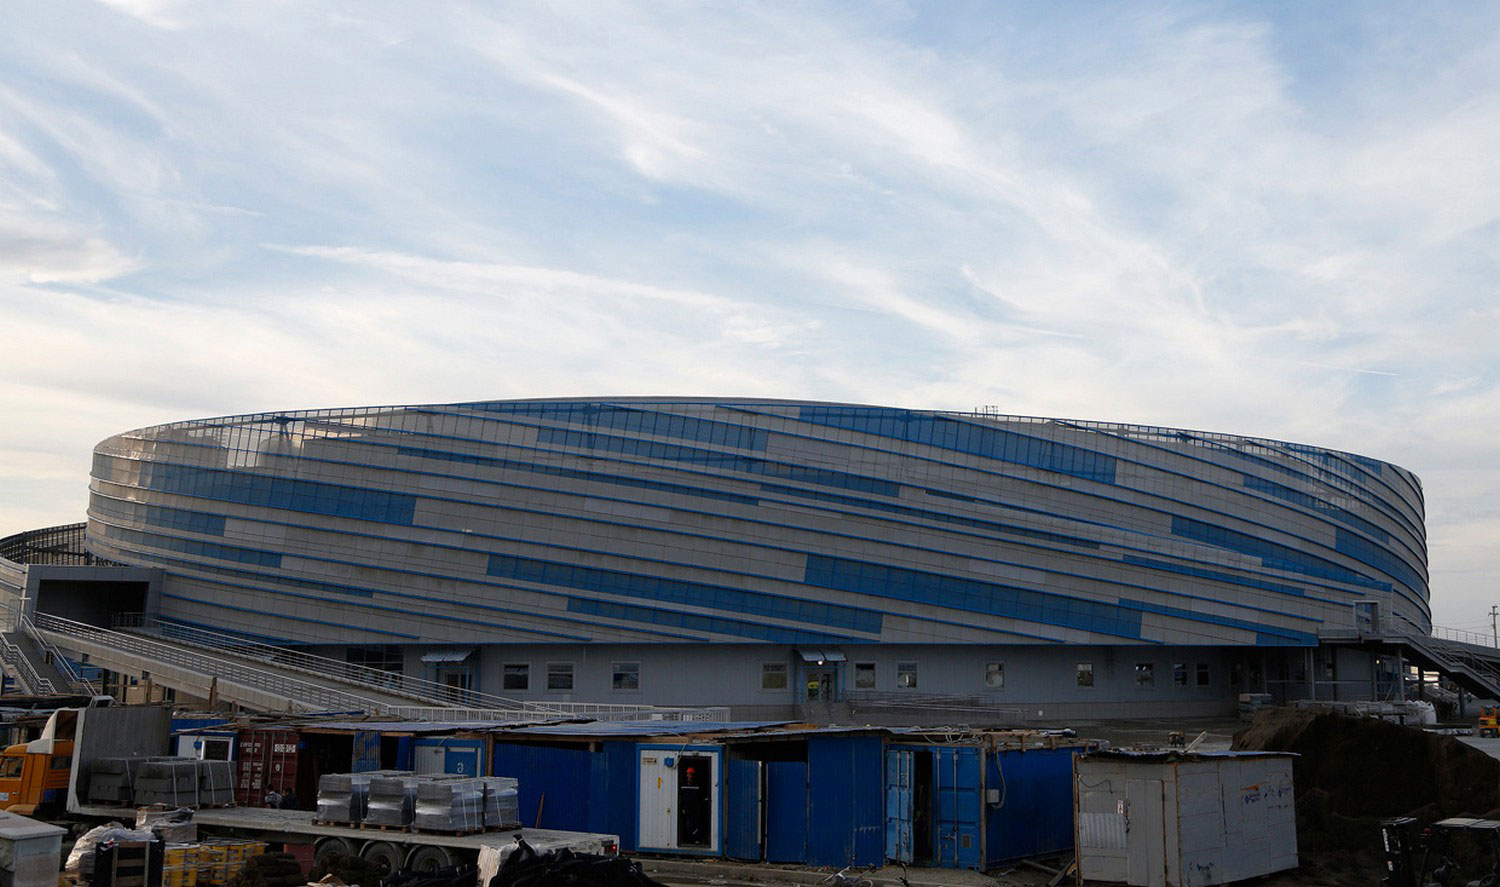 хоккейная коробка на олимпиаде 2014 в Сочи, фото